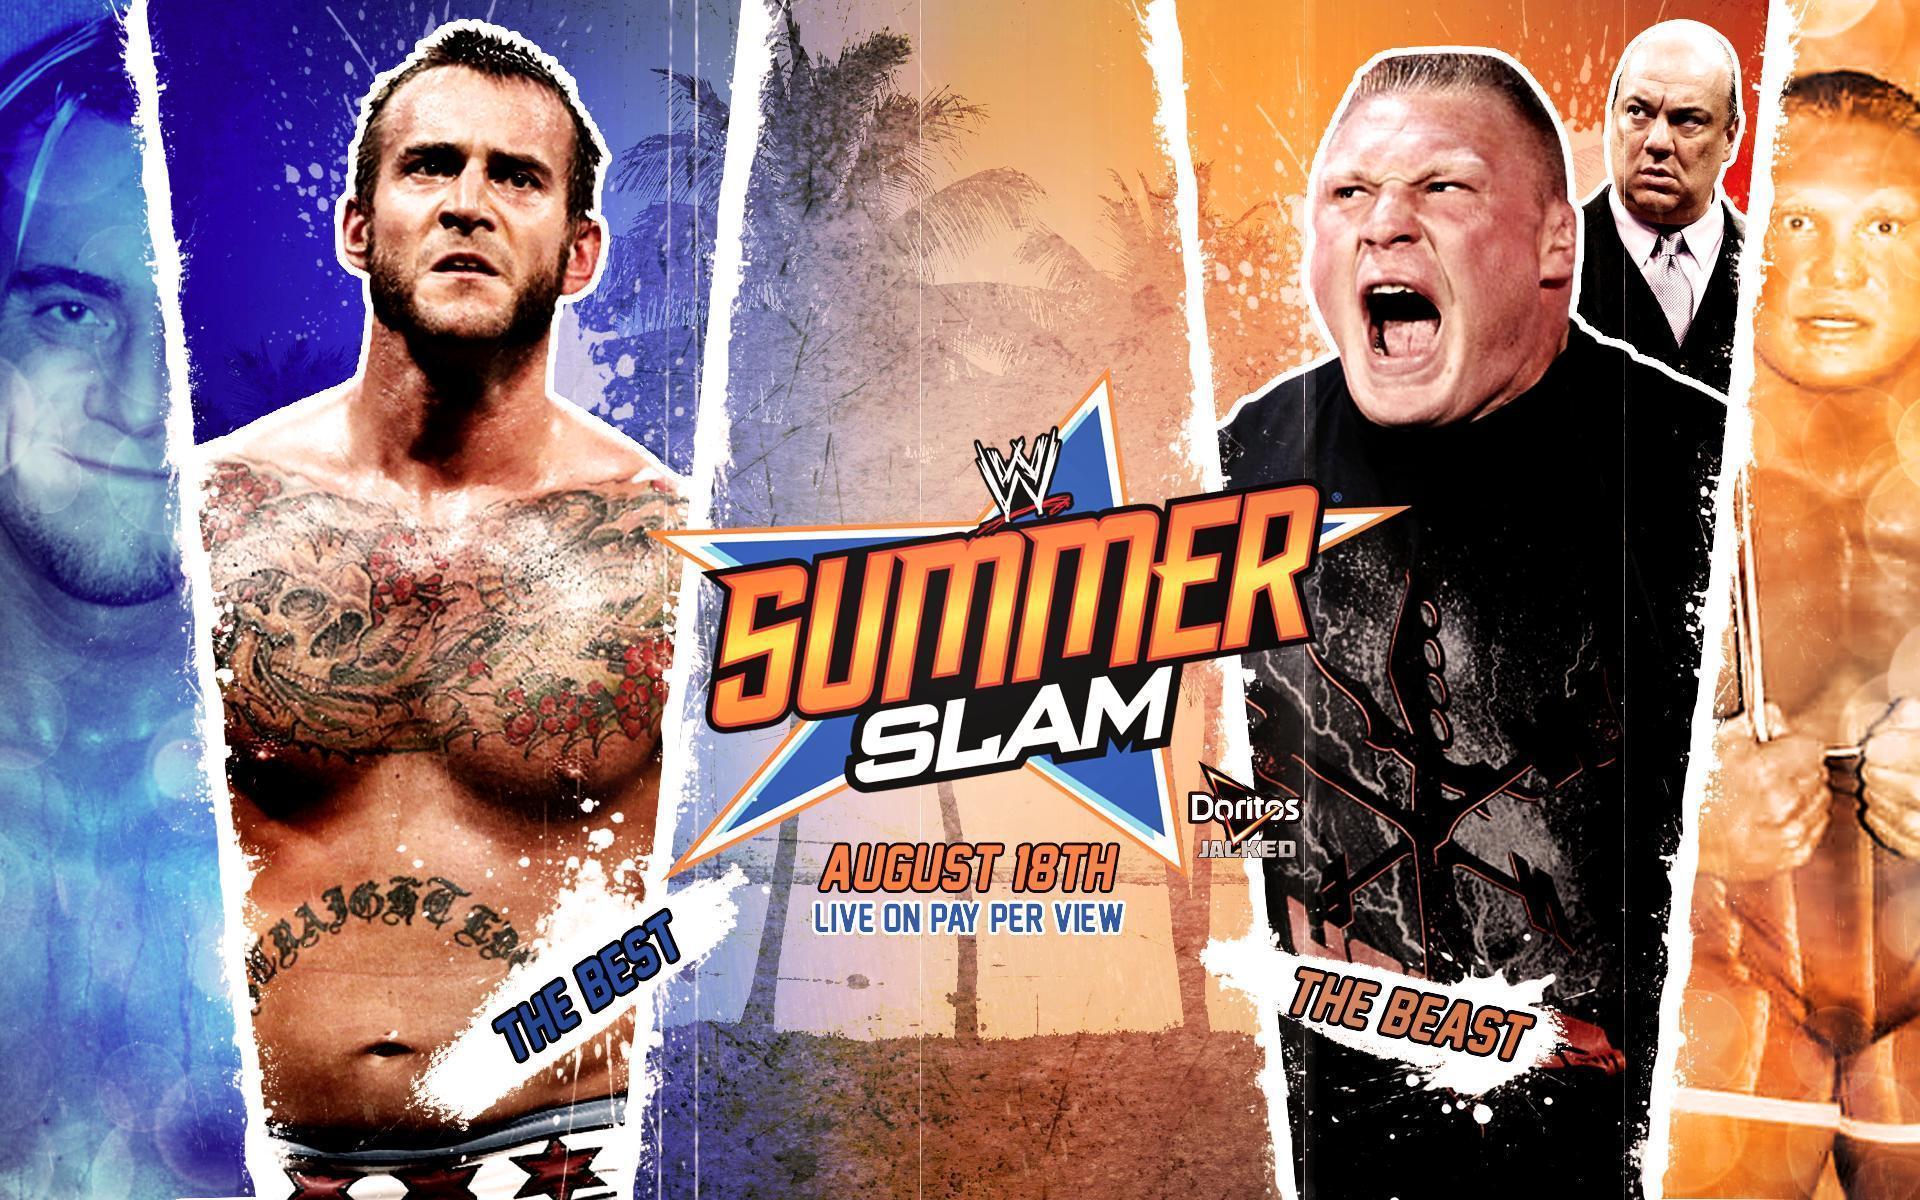 Free download WWE Summerslam 2016 John Cena Vs Brock Lesnar